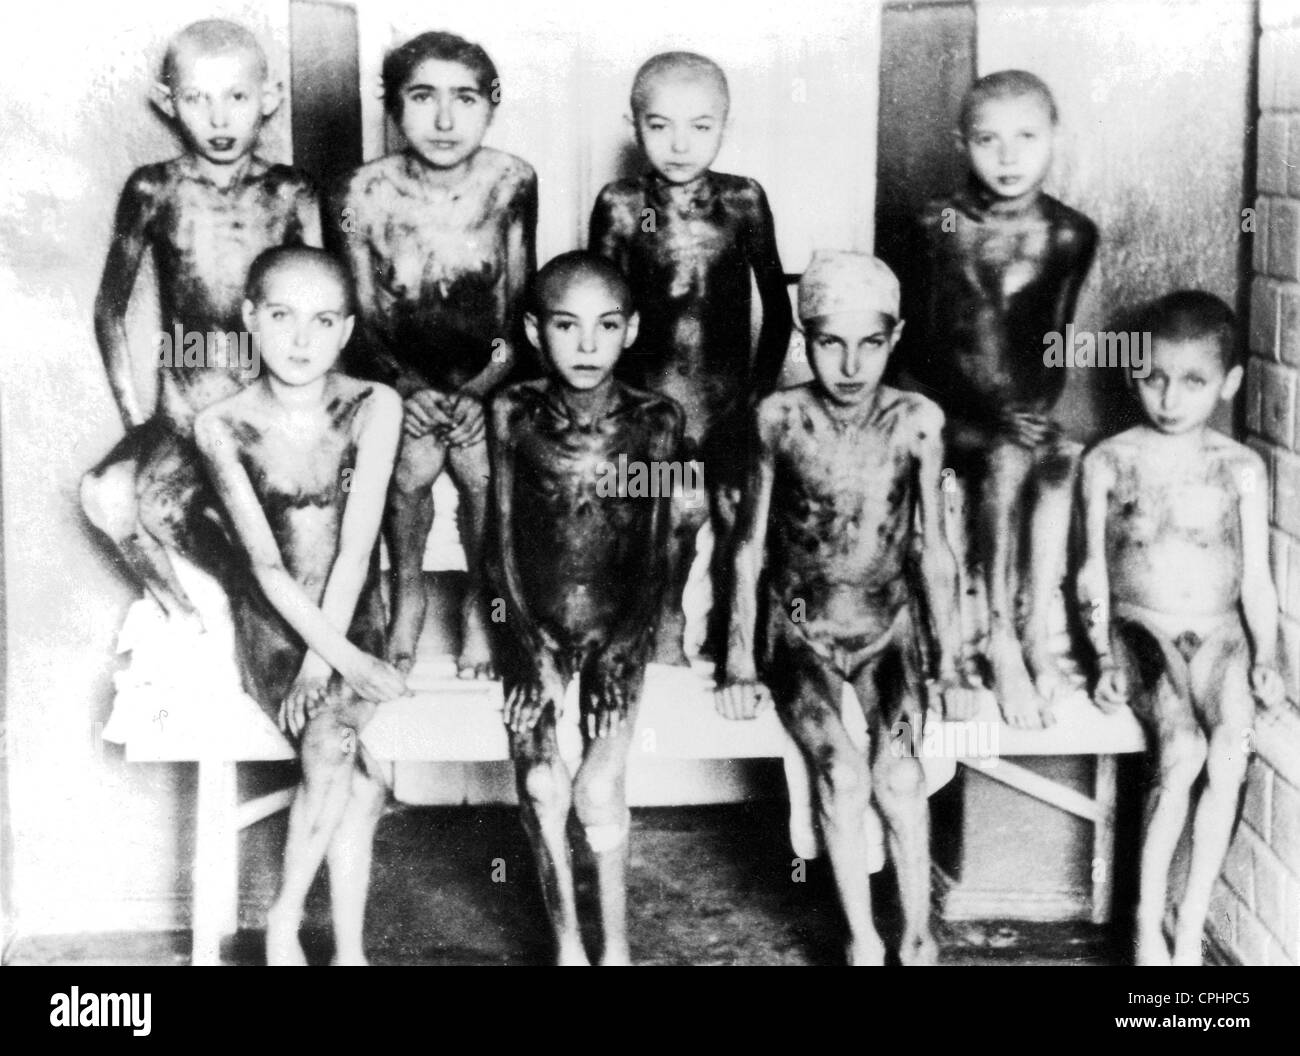 Bambini vittime del nazismo esperimenti medici al campo di concentramento di Auschwitz, Polonia, 1940-45 (b/w photo) Foto Stock